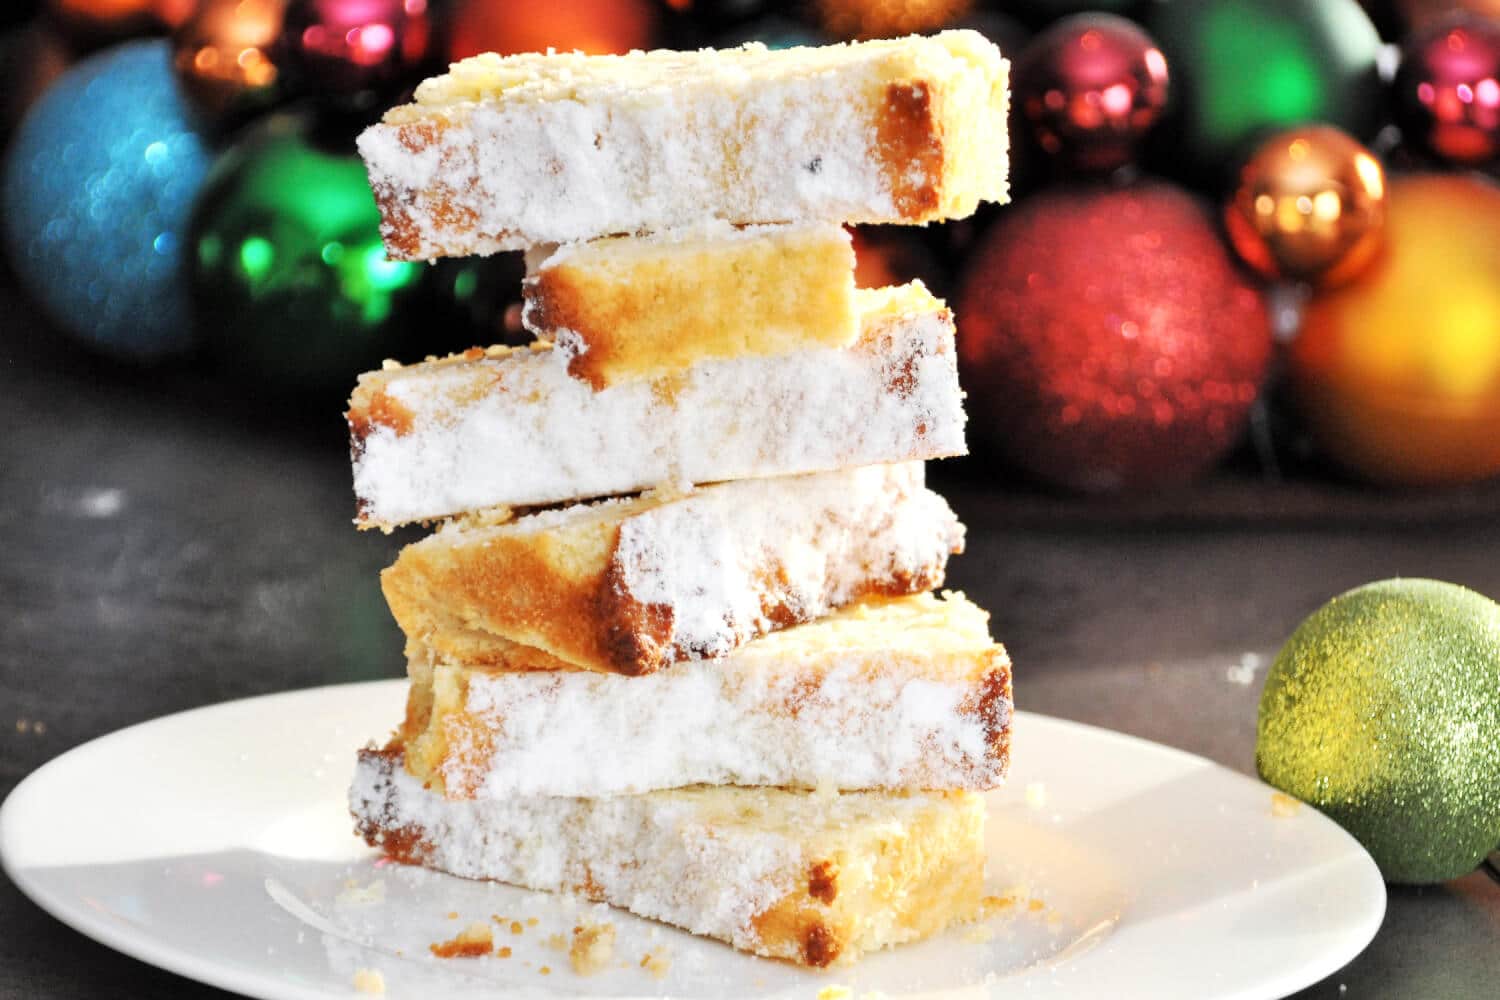 Low Carb Backen zu Weihnachten: Dieser Low Carb Mandelstollen mit Marzipan wird dich begeistern. Er ist schnell zubereitet, glutenfrei und kommt natürlich ohne Zucker aus!